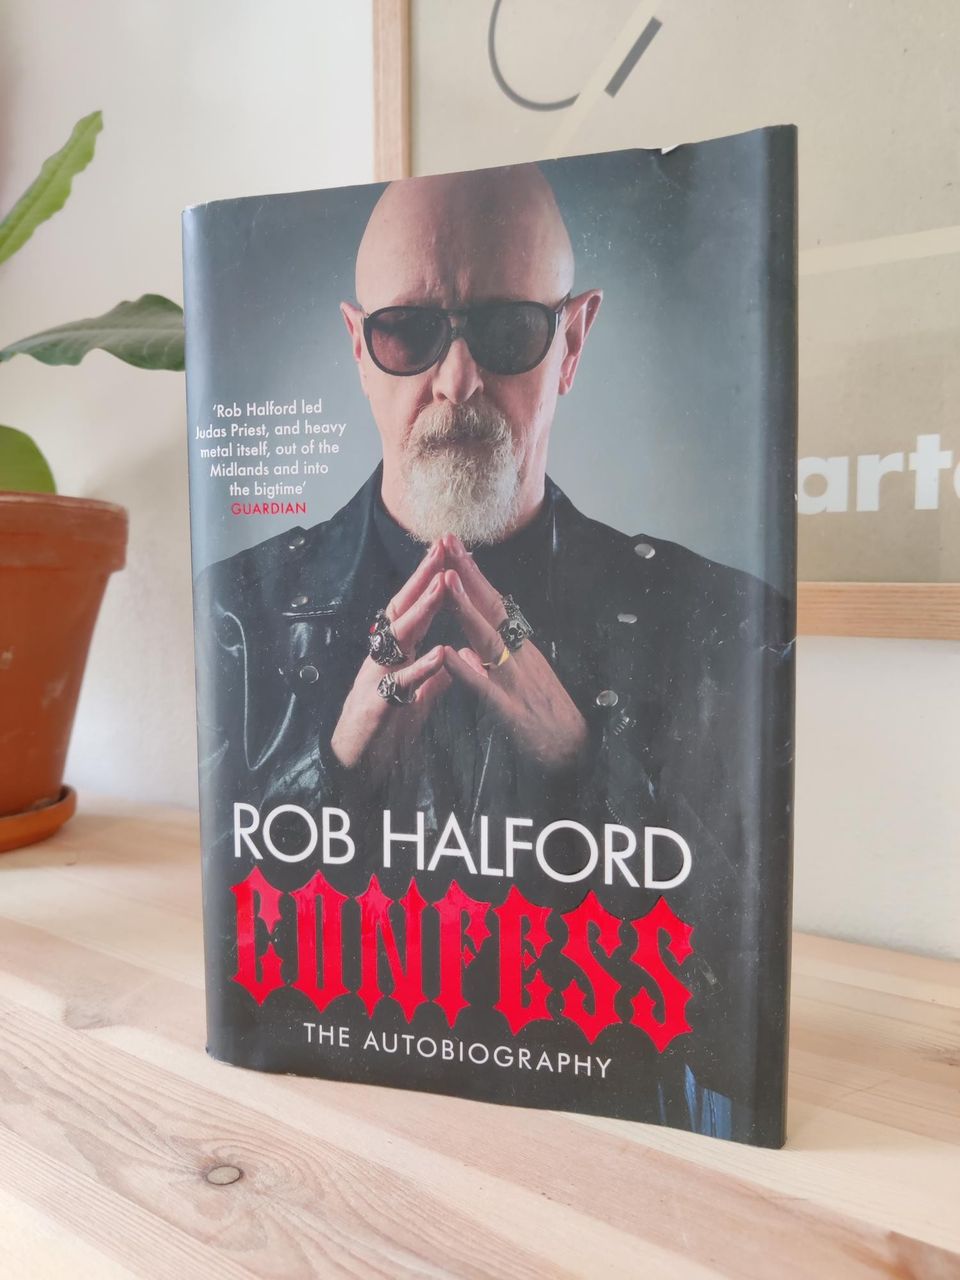 Confess - Rob Halford